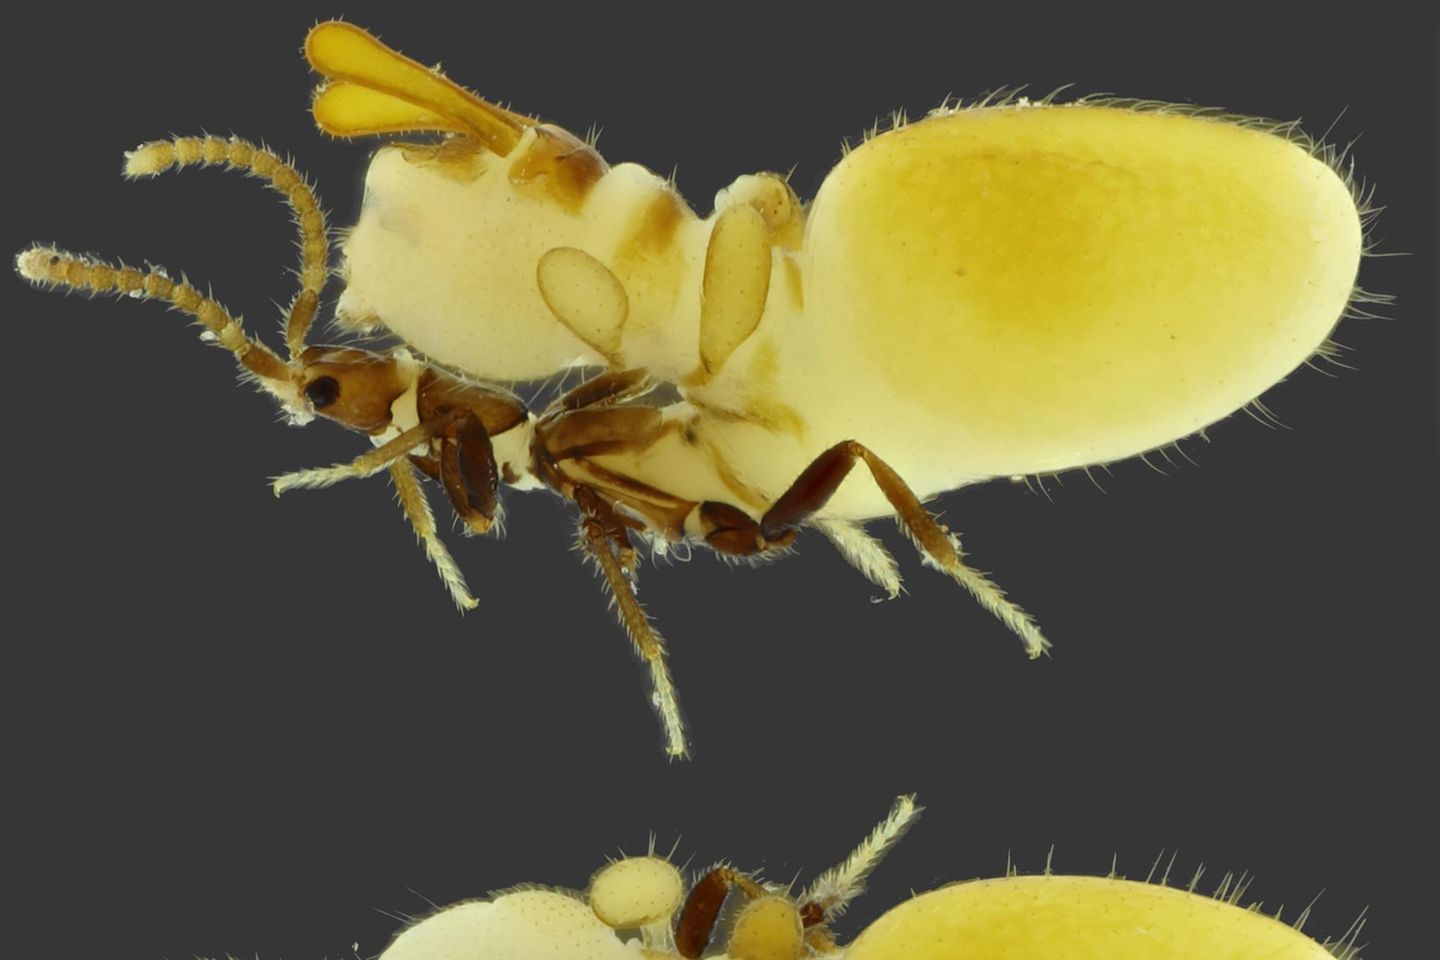 Die Käfer vergrößern für die originalgetreue Nachbildung einer Termite ihren Unterleib. Das Phänomen ist als sogenannte Physiogastrie bekannt